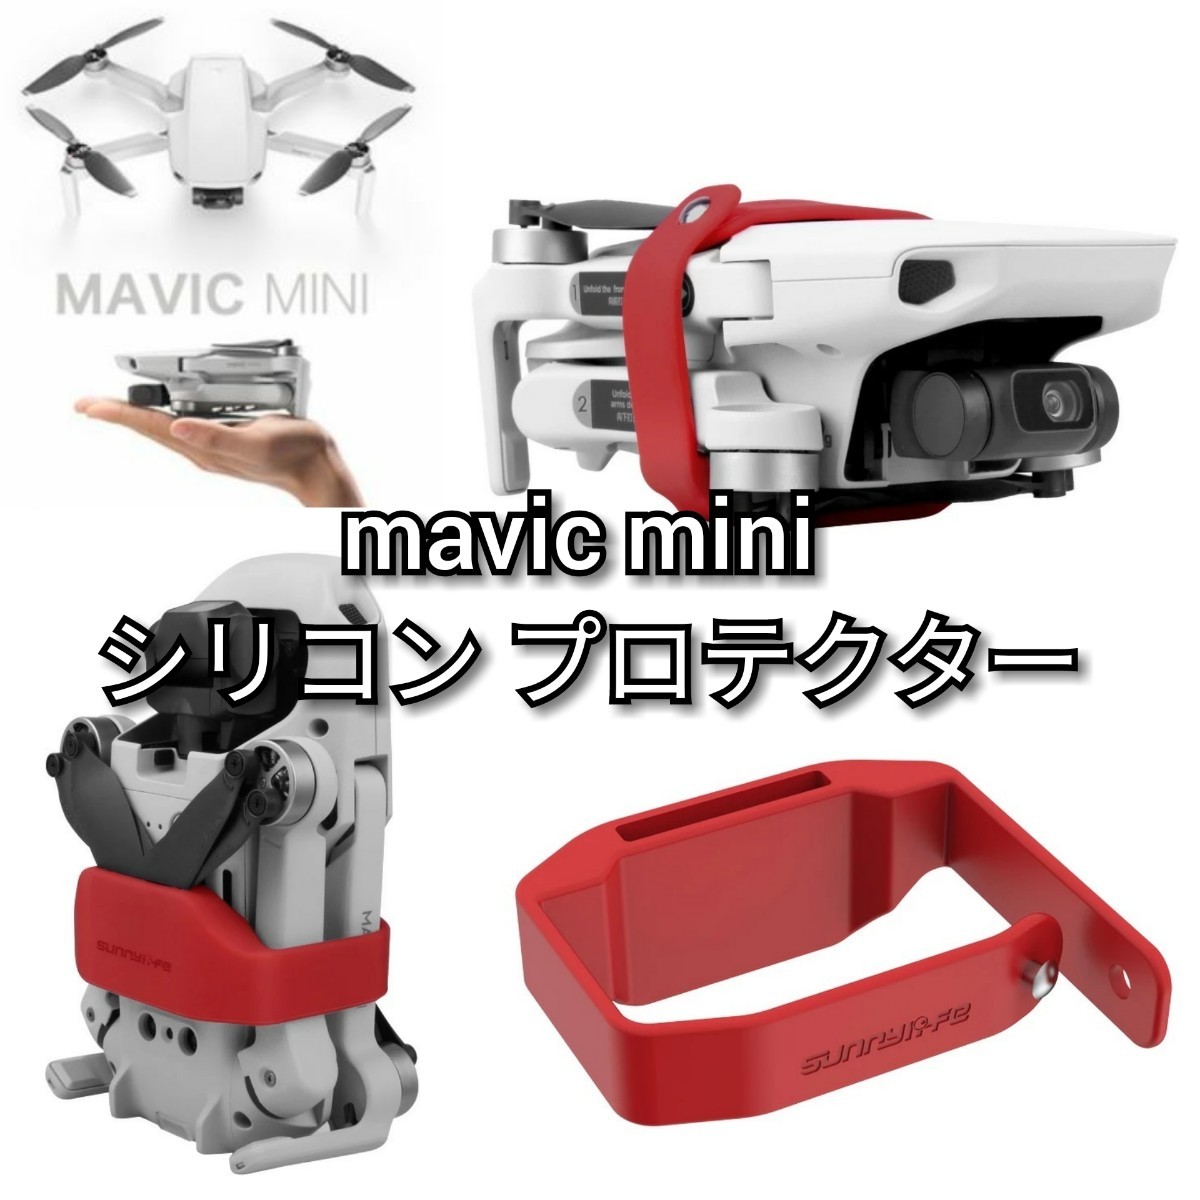 ■mavic mini/mini2 シリコン プロテクター 1個【赤 or 黒】